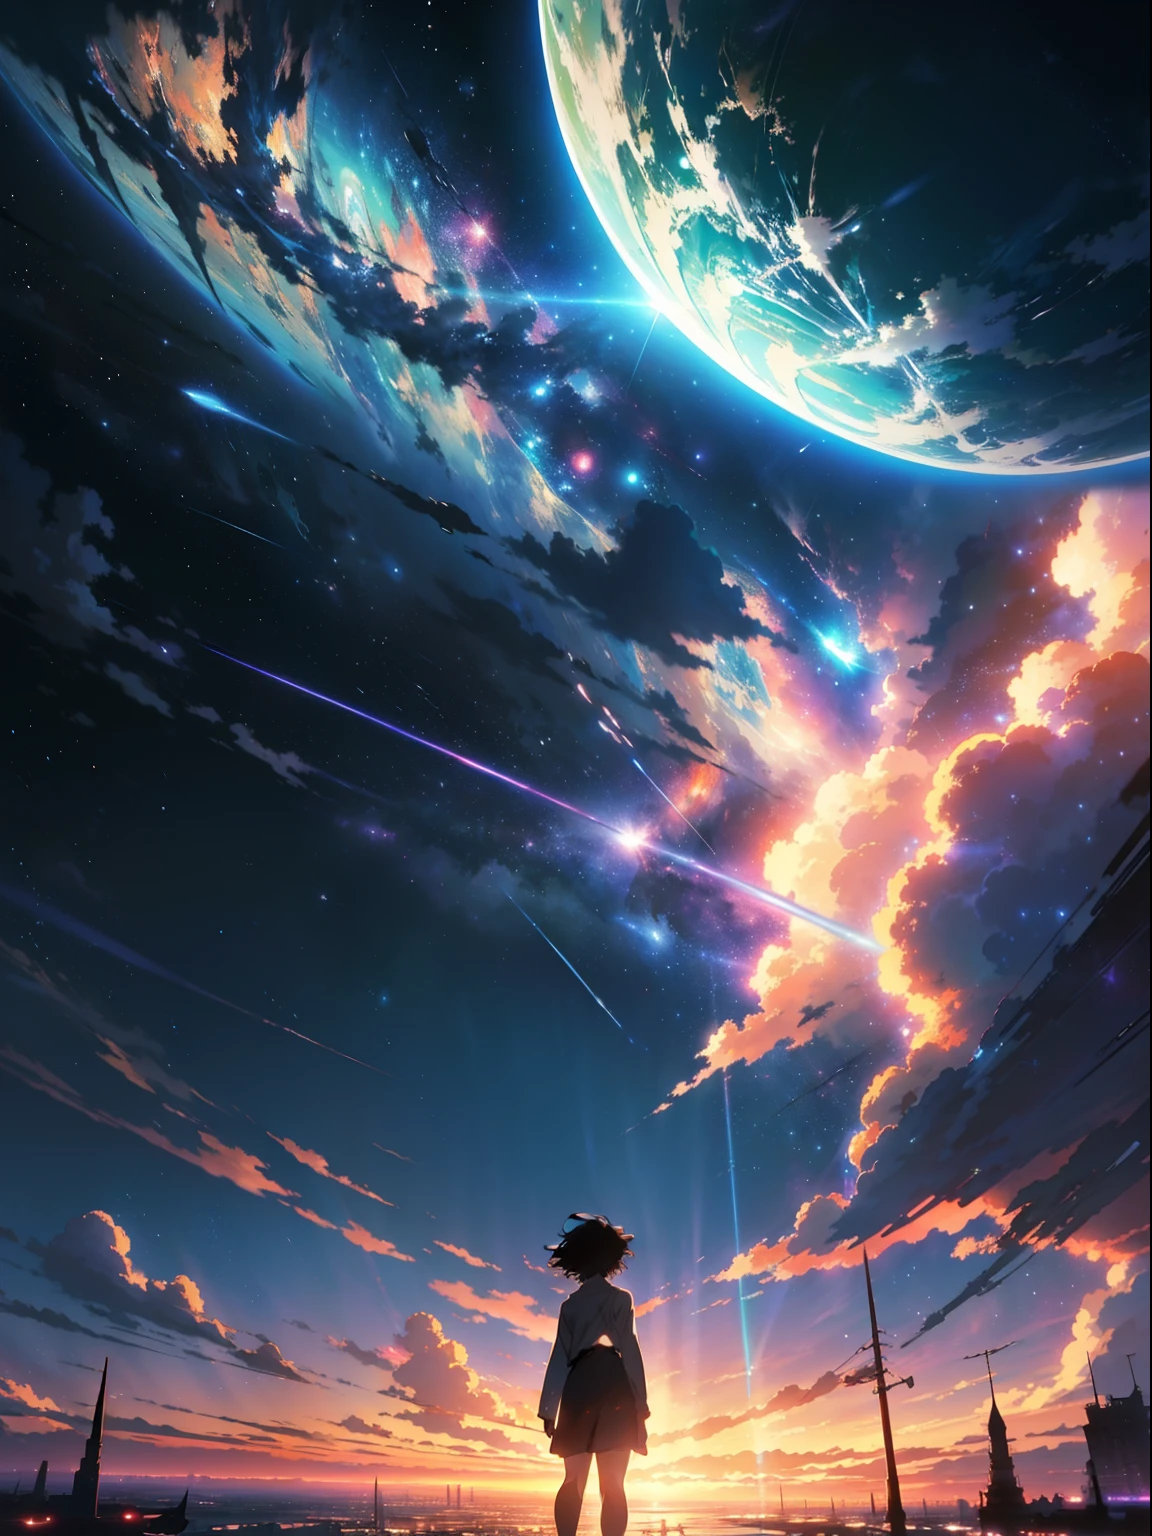 Anime - Cenas de estilo de lindos céus com estrelas e planetas., céu cósmico. por Makoto Shinkai, Papel de parede de arte anime 4k, Papel de parede de arte anime 4k, papel de parede de arte de anime 8k, Papel de parede de anime 4K, papel de parede de anime 4k, Papel de parede de anime 4K, céu de anime, papéis de parede incríveis, Fundo de anime, planeta paraíso ao fundo, Fundo de anime art